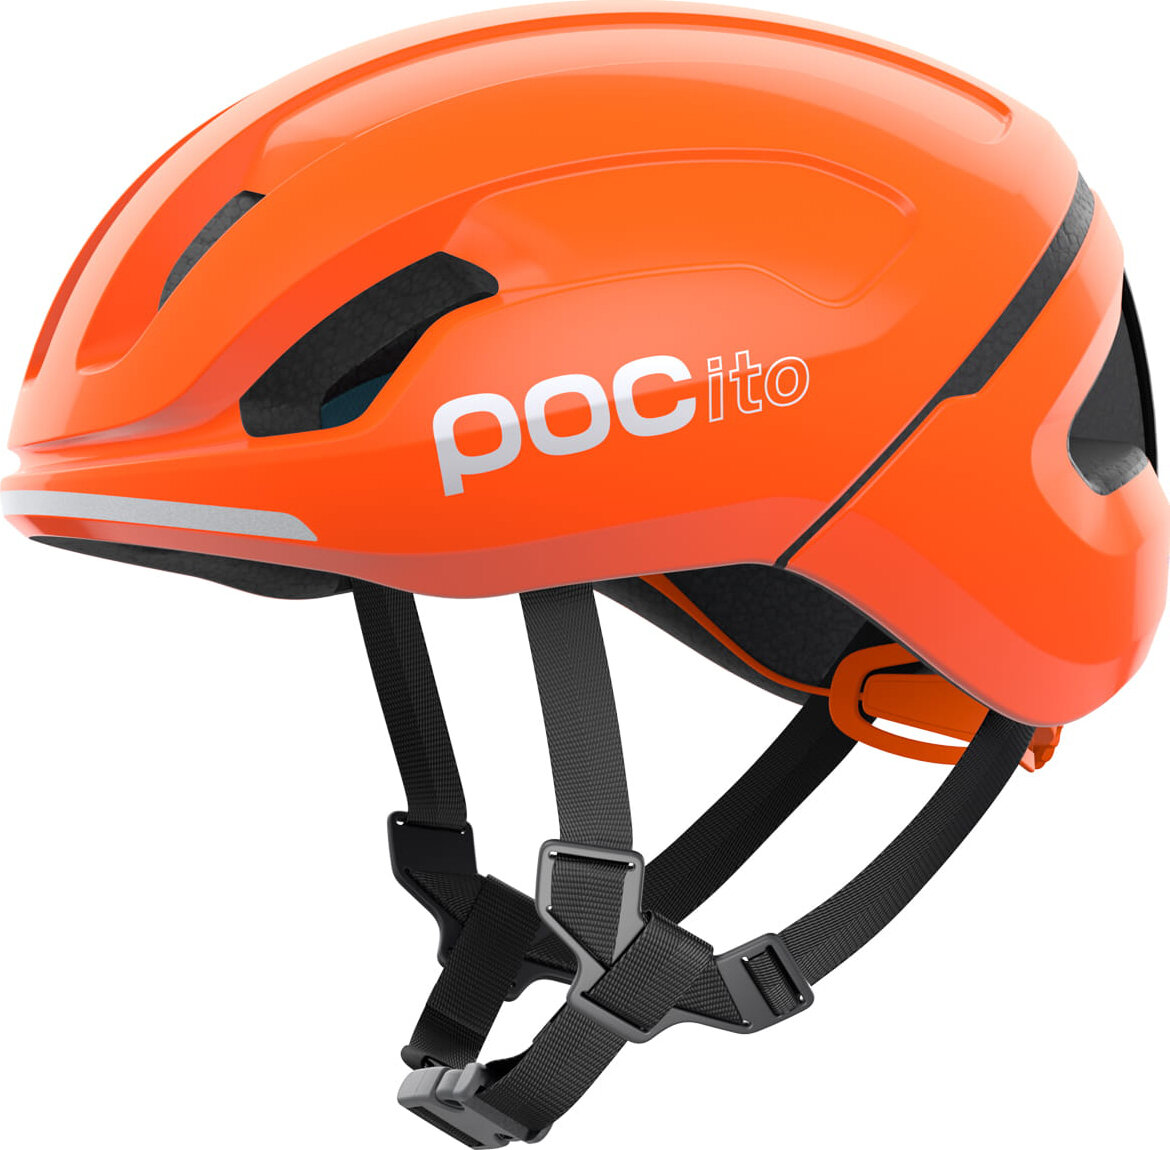 Шлем POC Pocito Omne Spin (Fluorescent Orange) PC 107269050SML1, PC 107269050XSM1